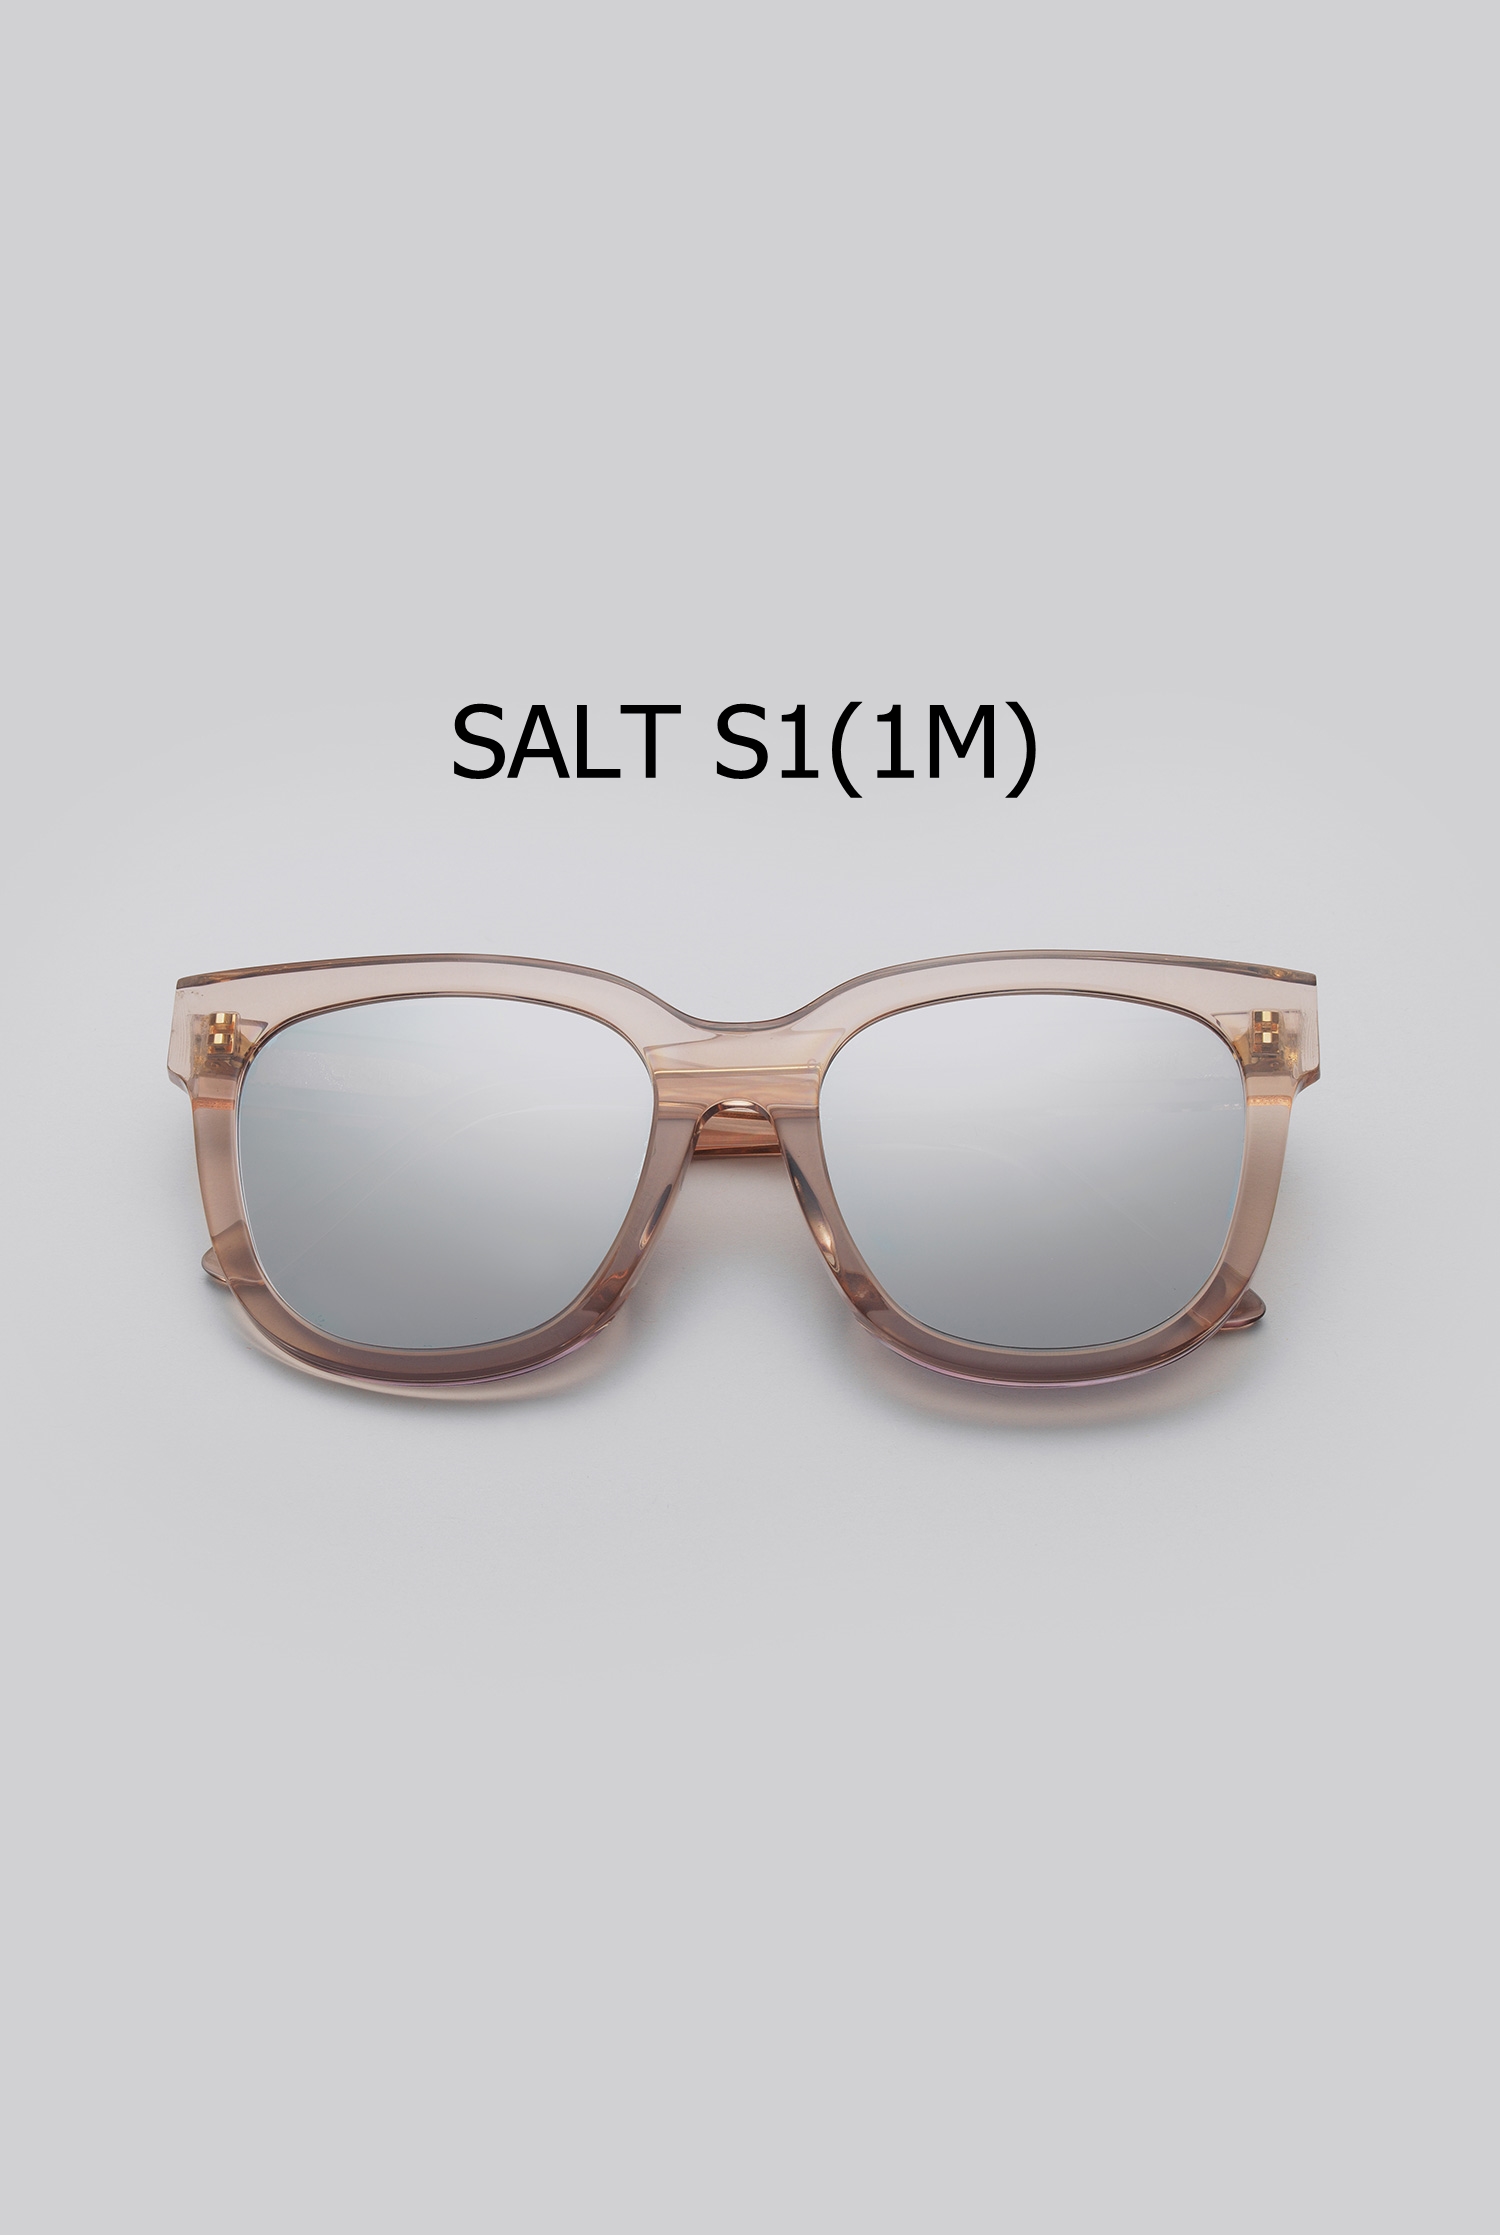 SALT S1(1M)